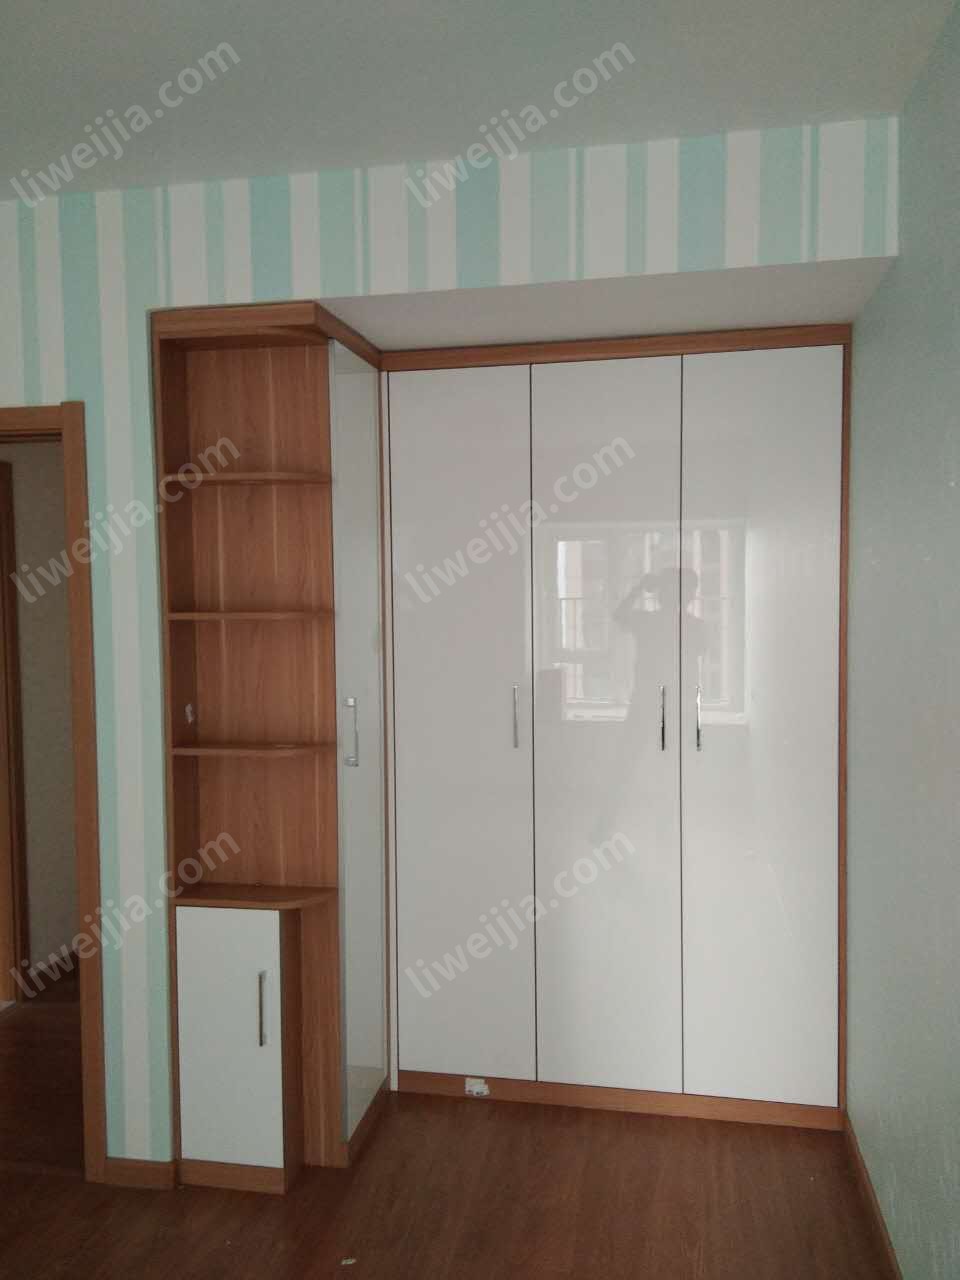 这次定制的圈套定制家具，两个卧室和鞋柜都采用了统一的木纹+白色的风格，其中主卧的入墙式衣柜堪称亮点。